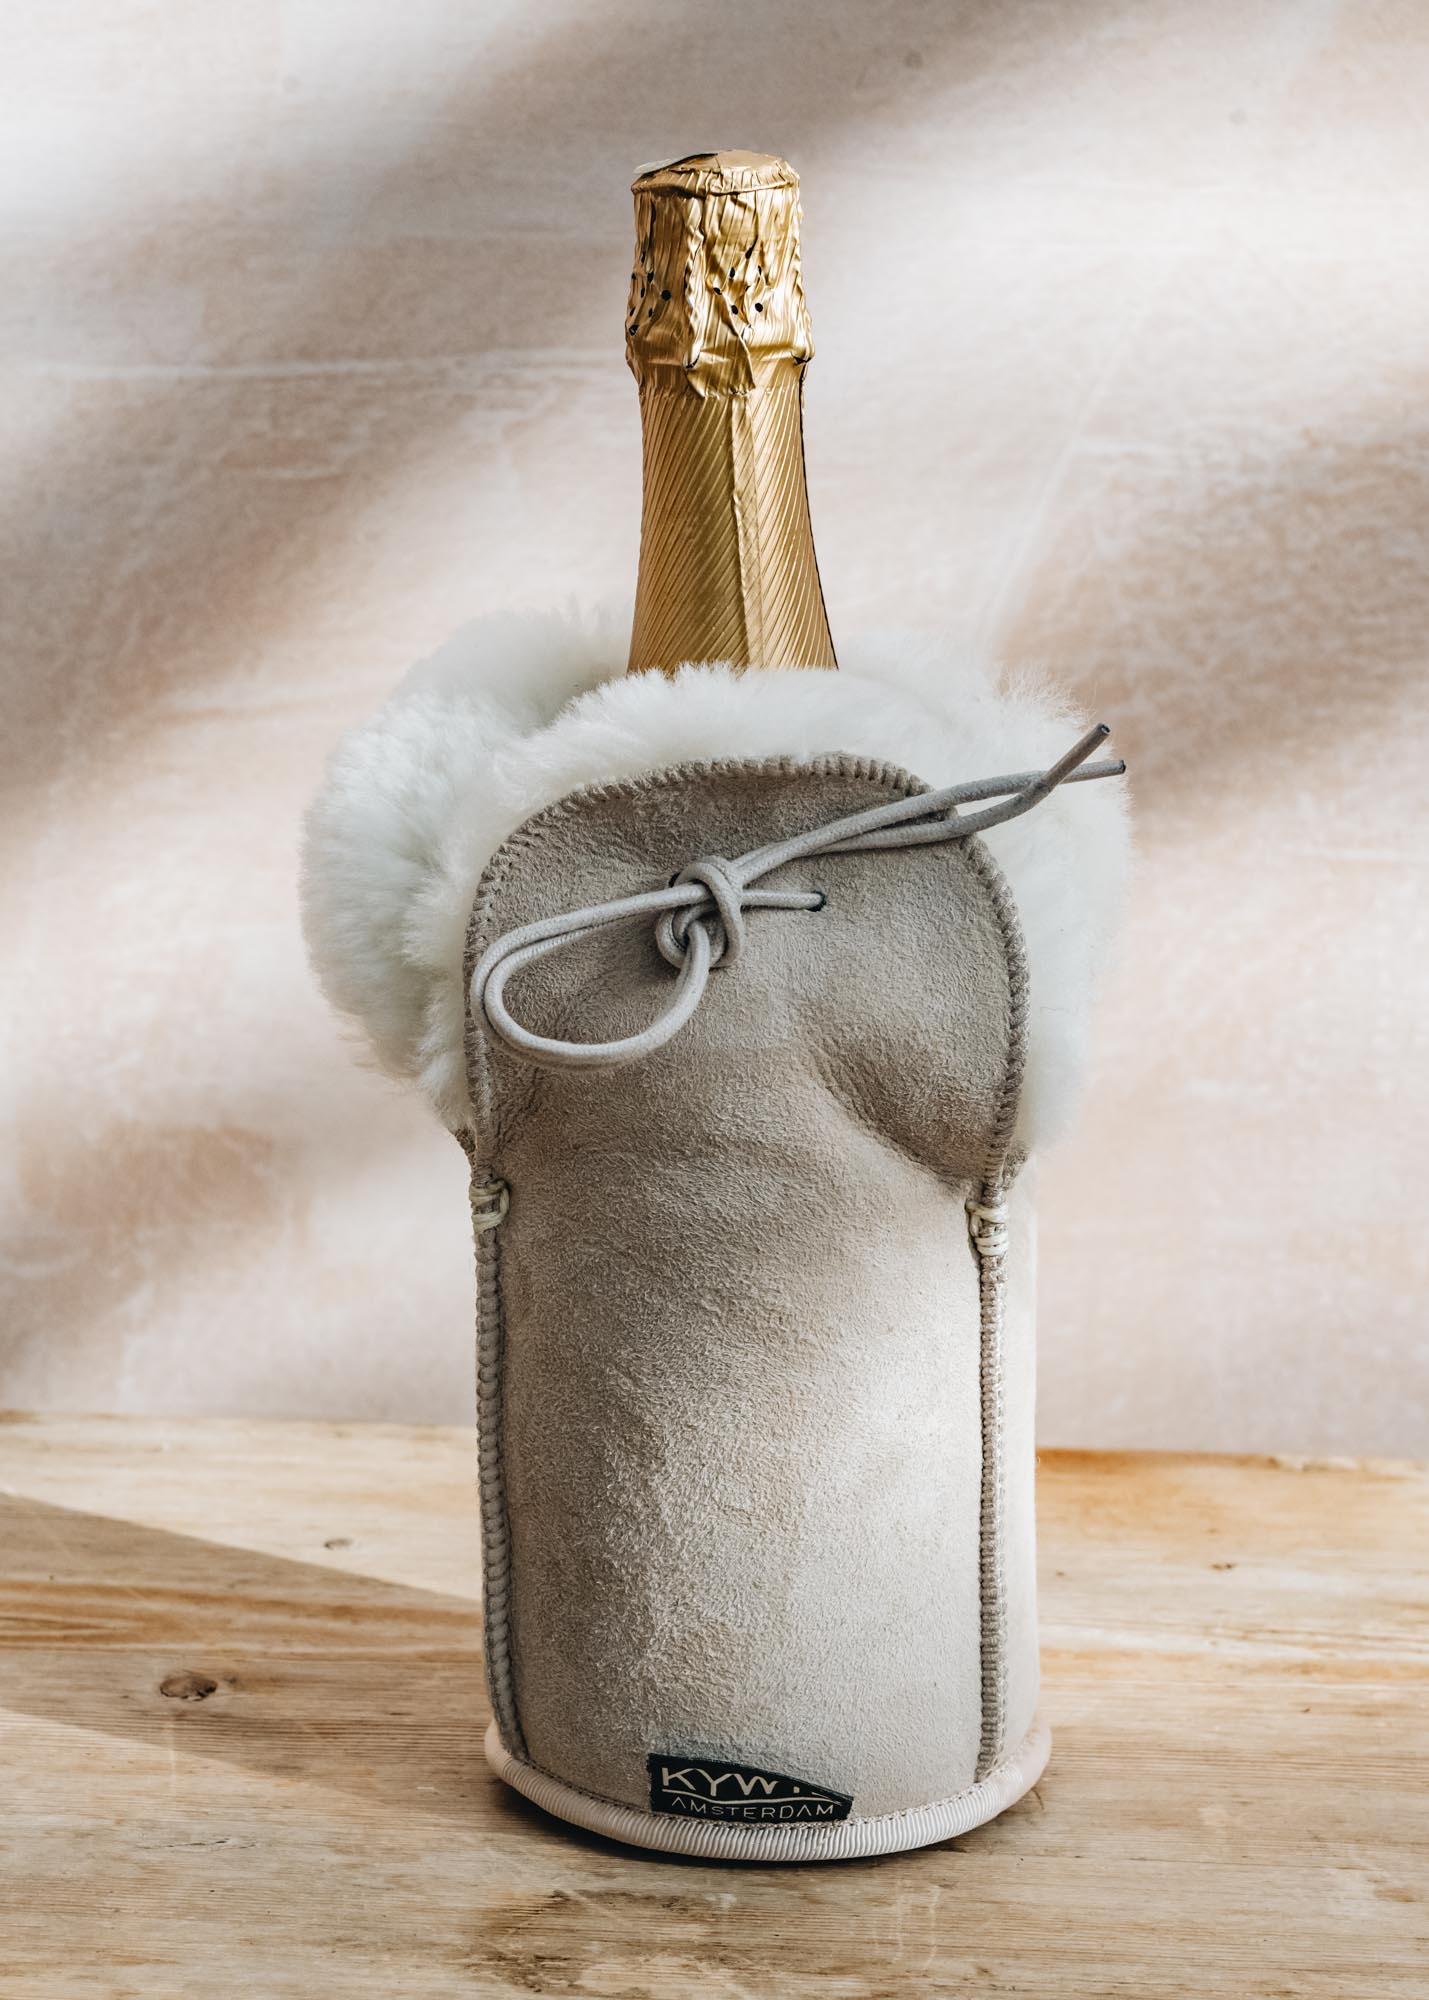 KYWIE Sheepskin Champagne Cooler in Beige Suede